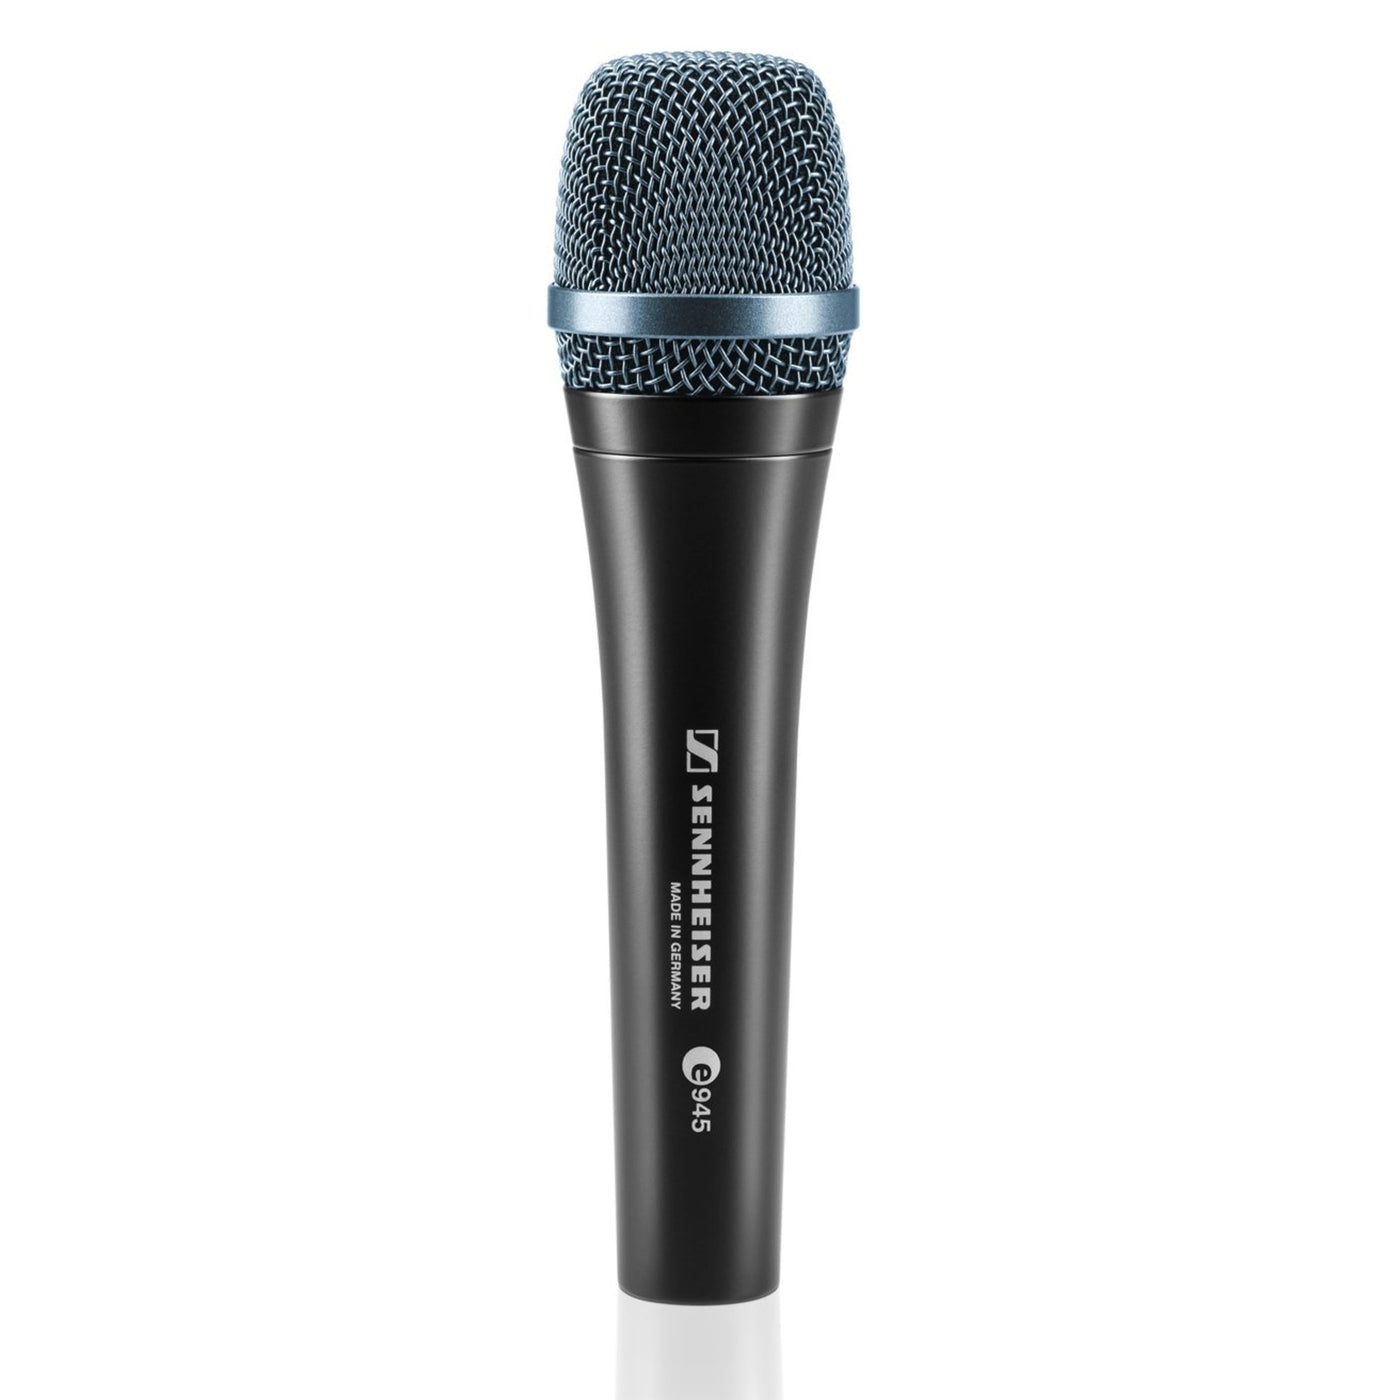 Sennheiser E 945 Microphone